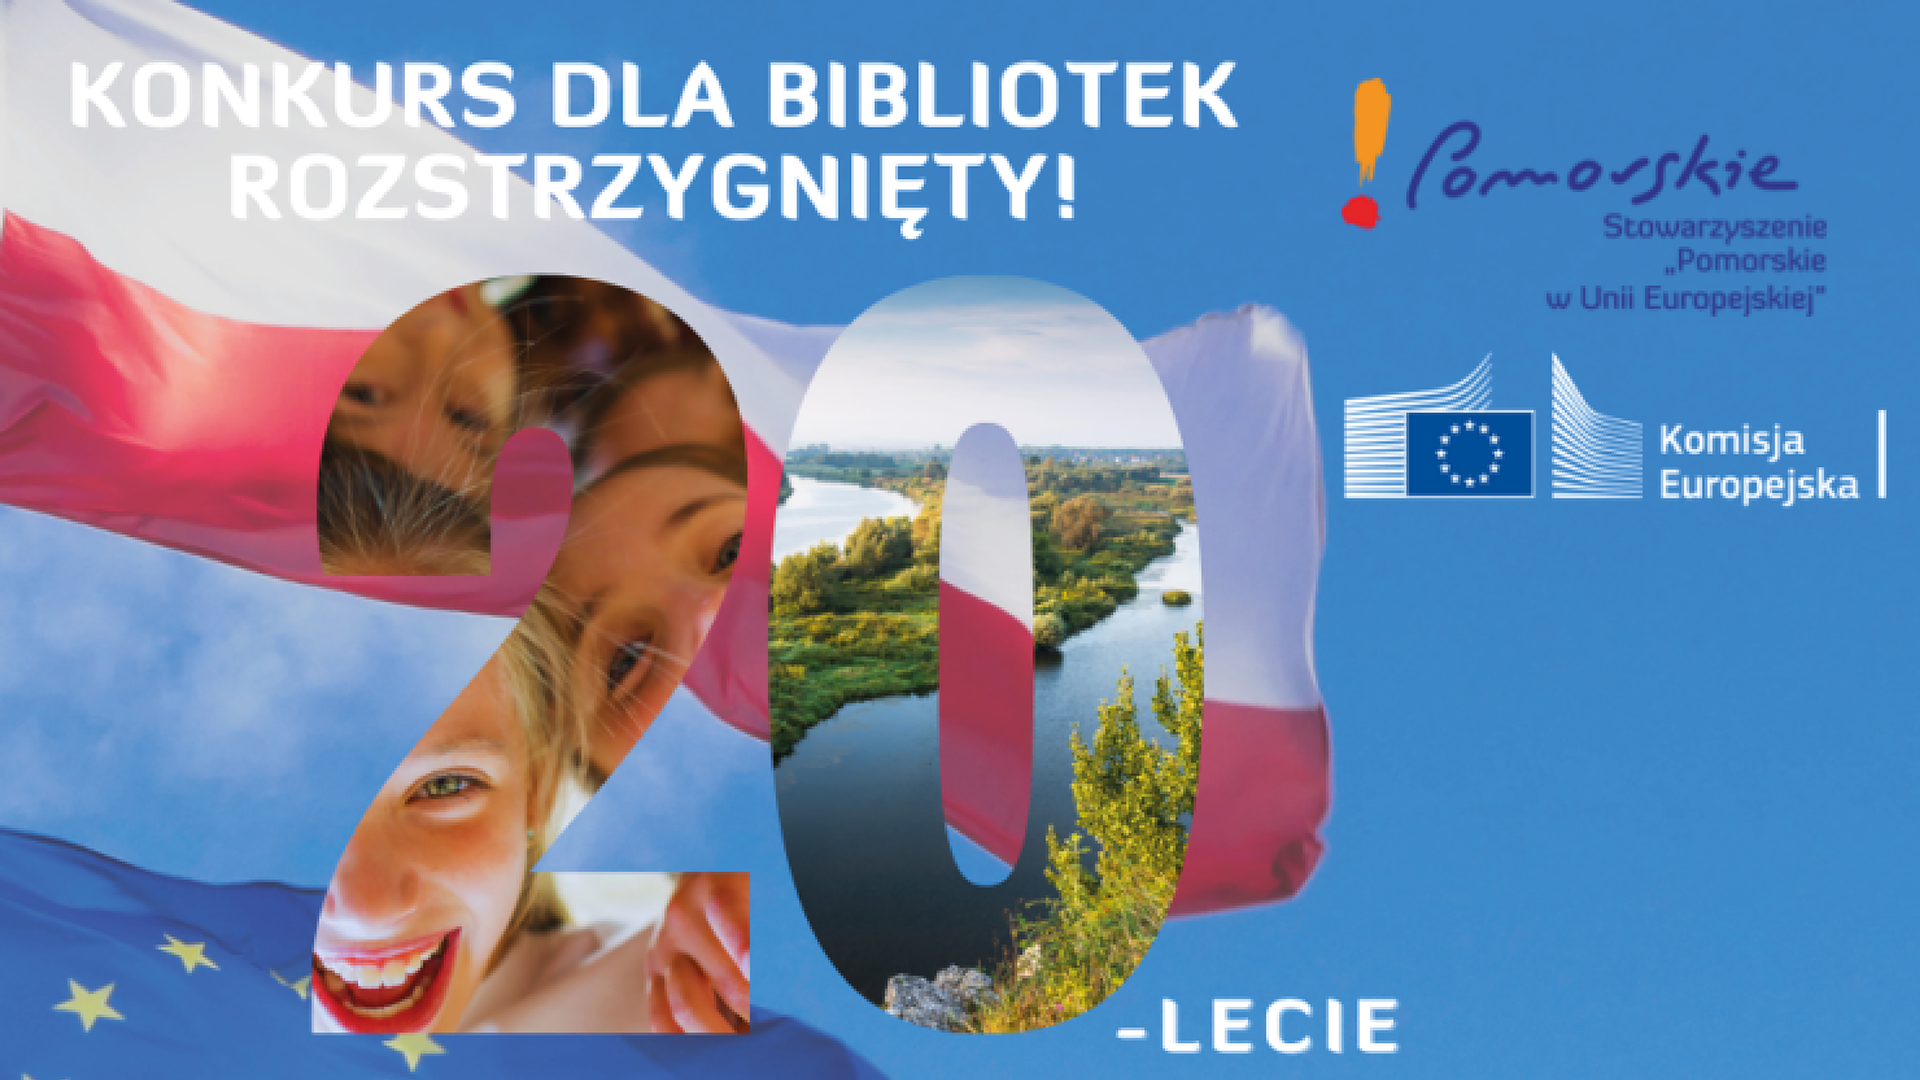 aktualność: Wyniki konkursu dla bibliotek publicznych z województwa pomorskiego